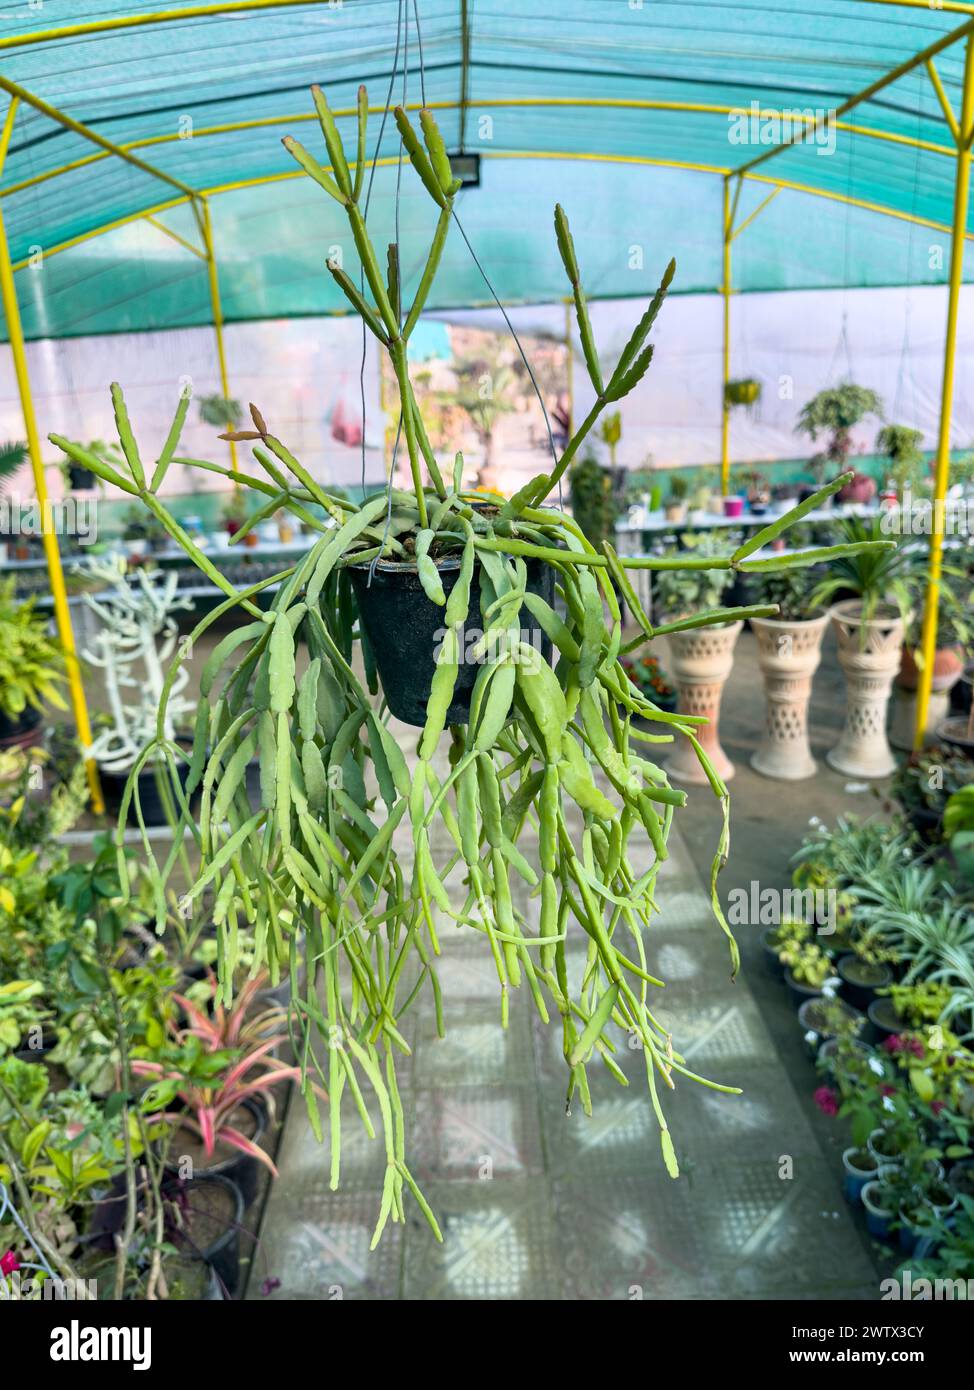 Rhipsalis micrantha plante de cactus suspendue poussant dans un pot suspendu Banque D'Images